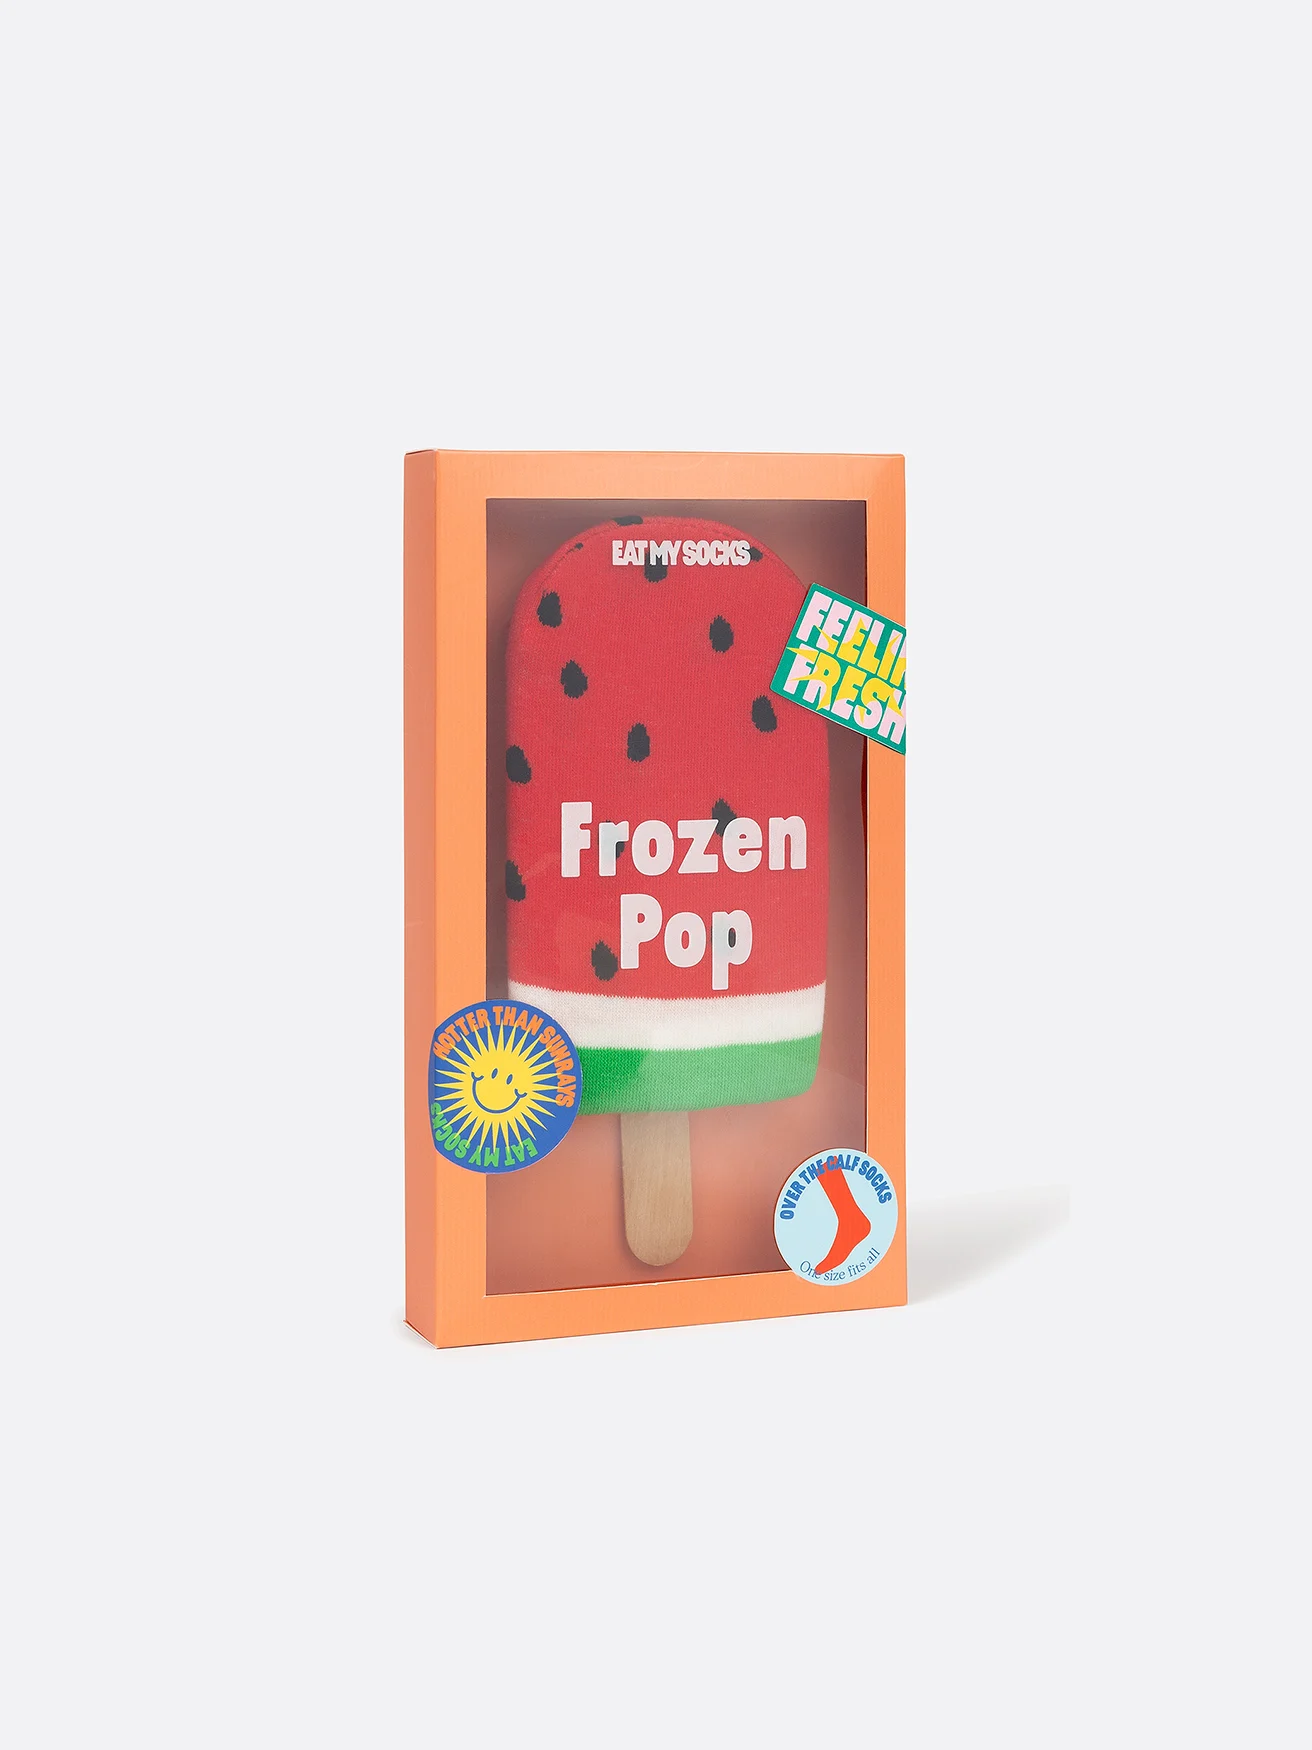 Eat My Socks - Frozen Pop - Watermelon - One size